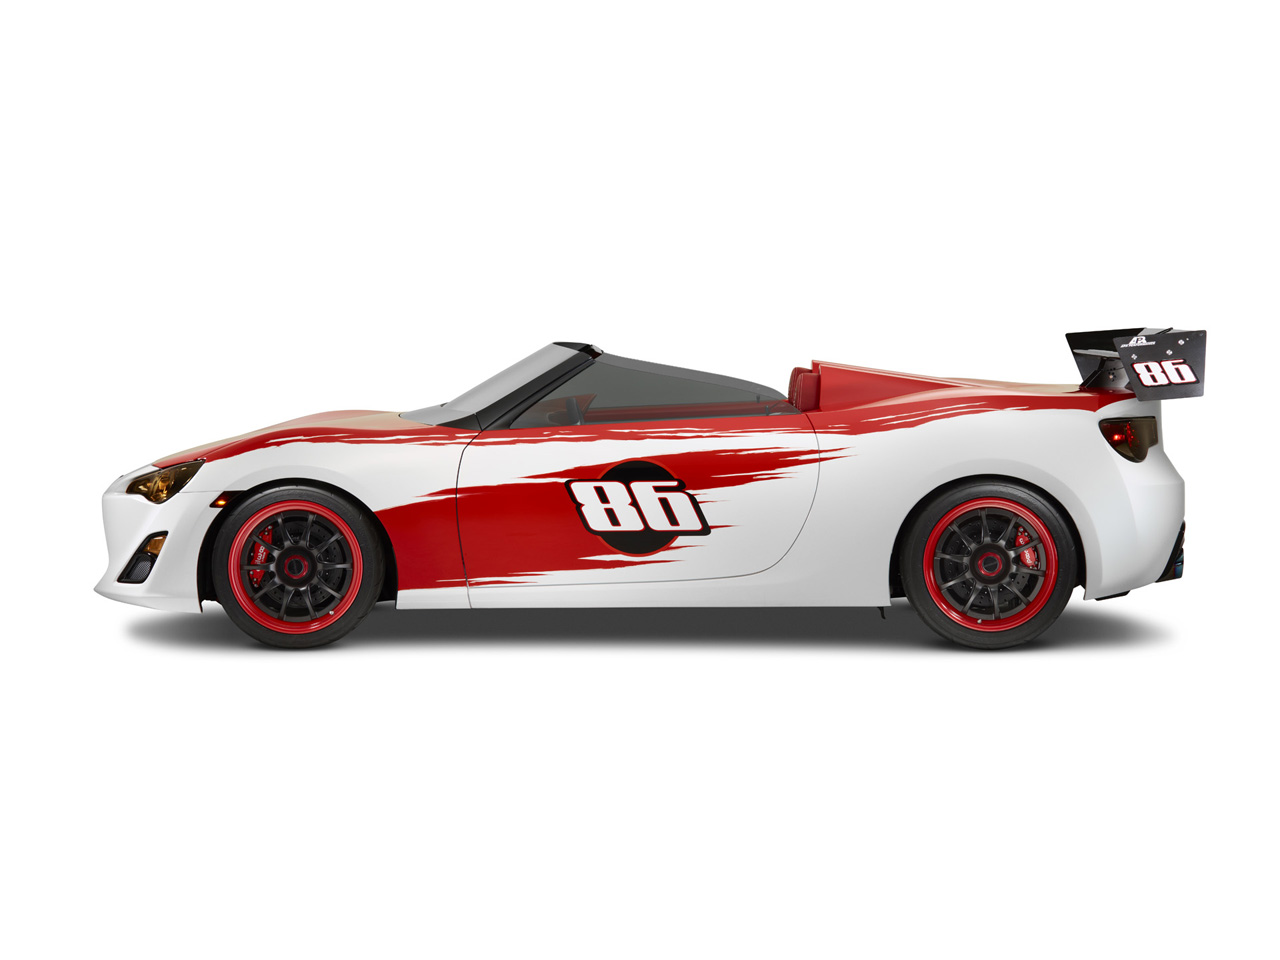 2012 Cartel Speedster Scion FR-S Concept